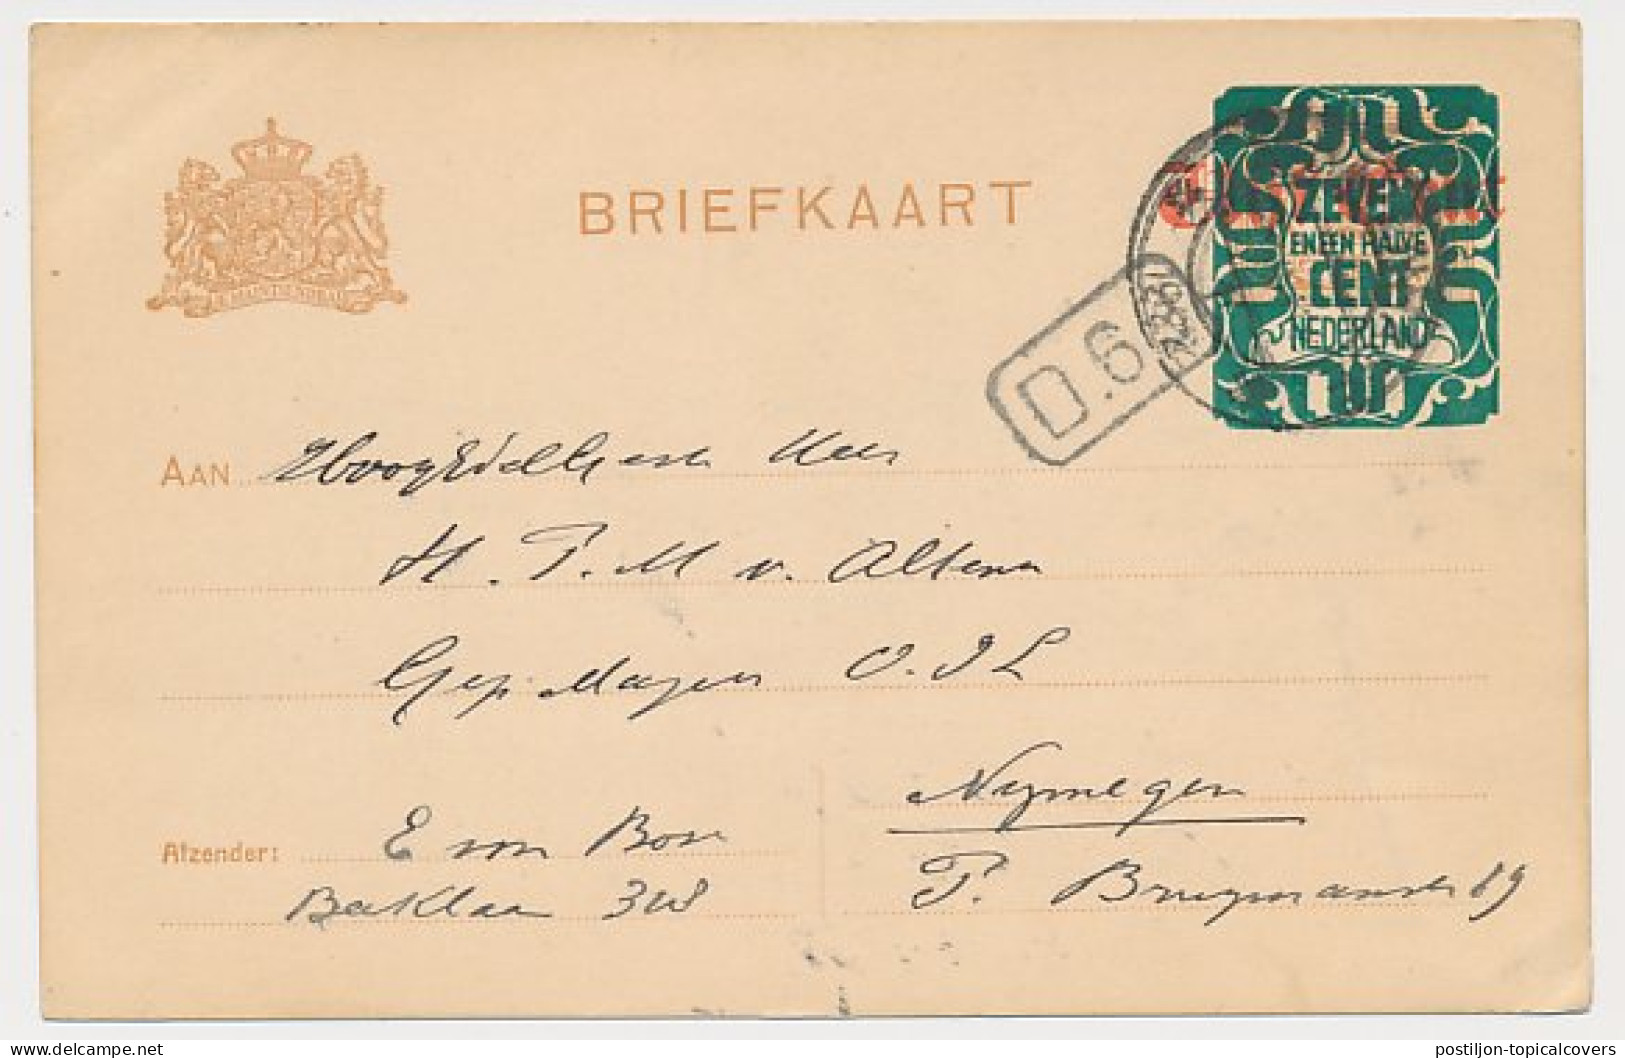 Briefkaart G. 176 A II S Gravenhage - Nijmegen 1922 - Postwaardestukken